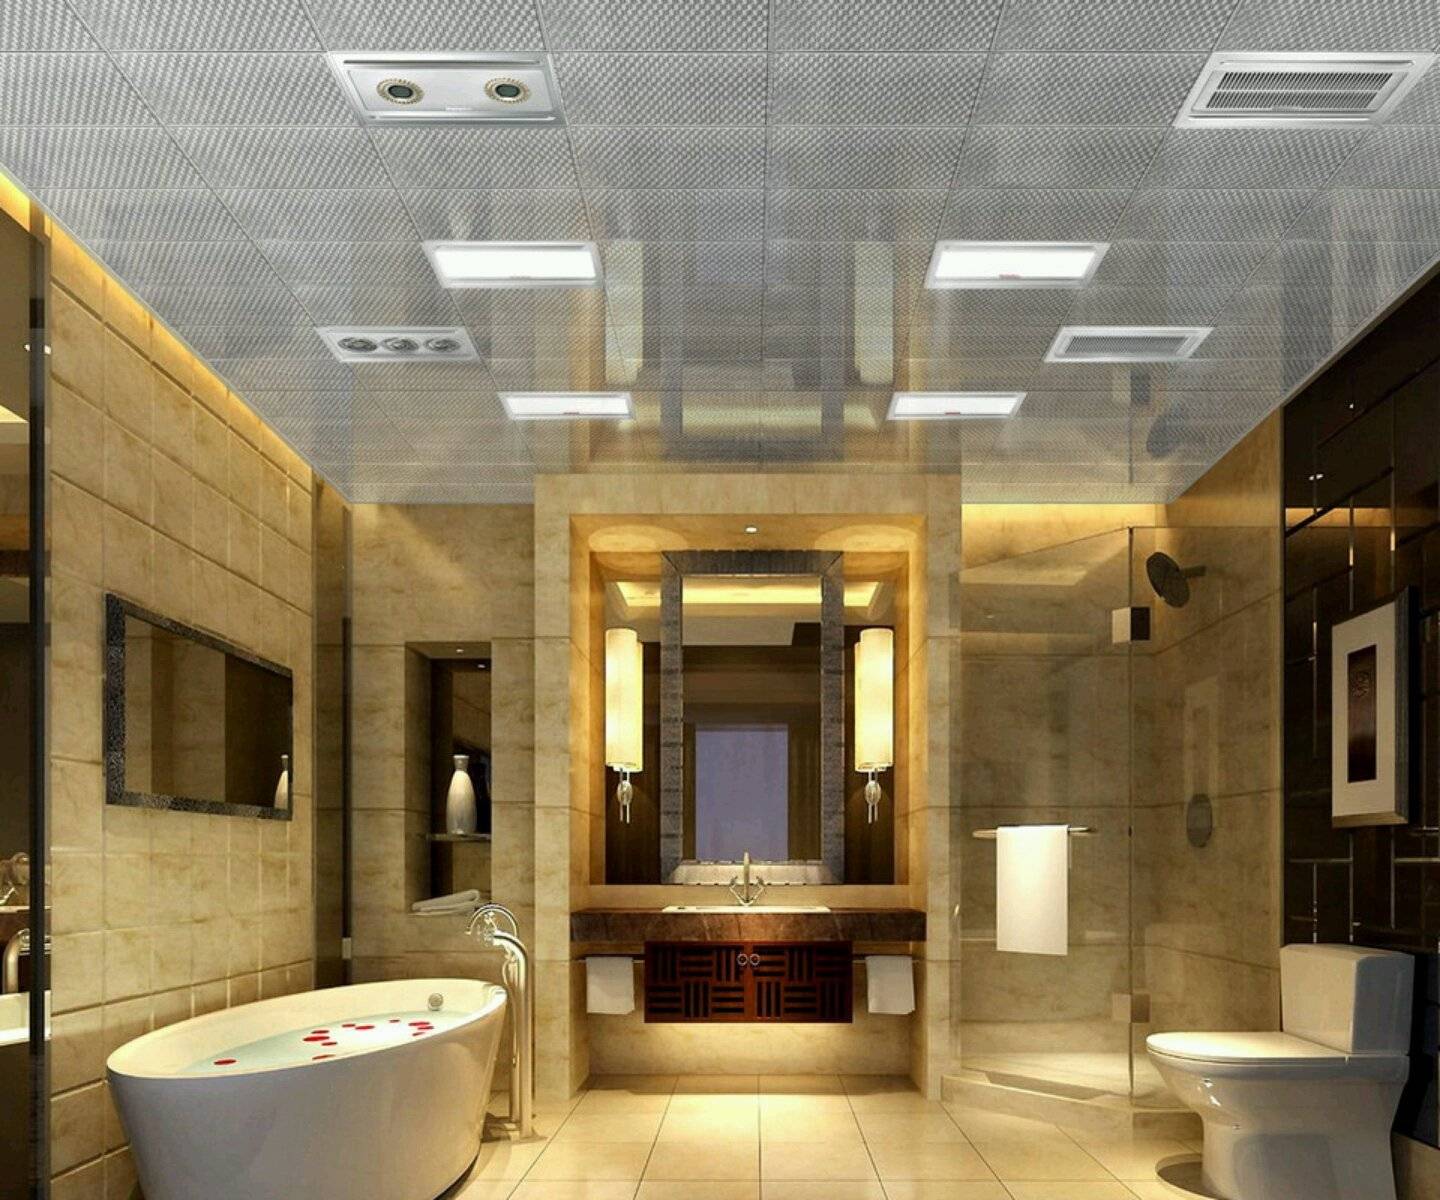 Дизайн потолка в ванной комнате - фото идей оформления